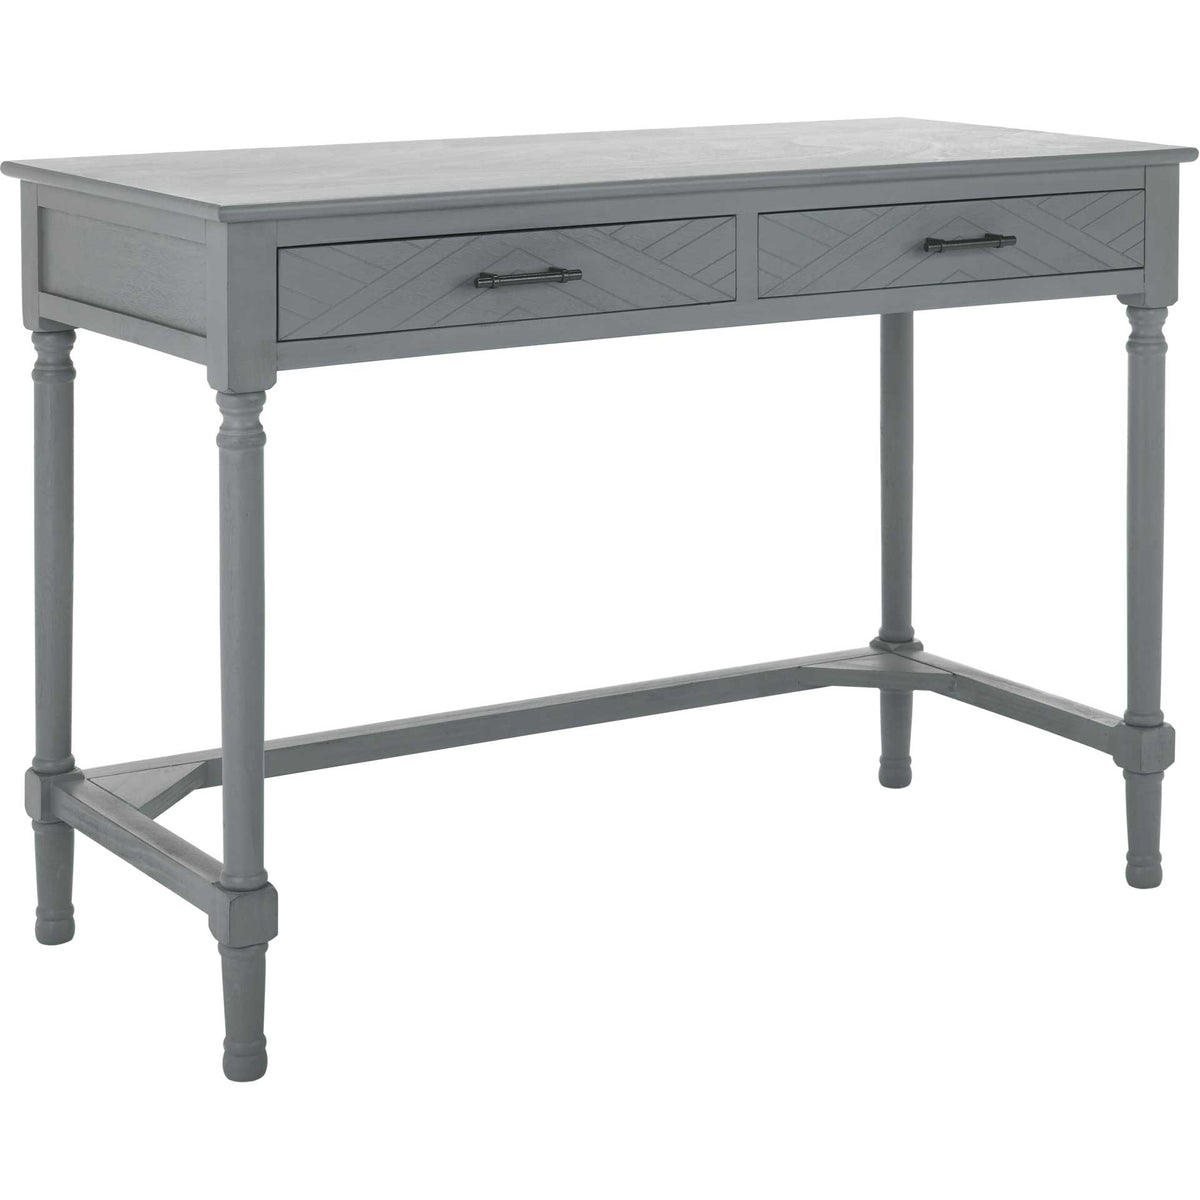 Mckenna 2 Drawer Desk Distressed Gray